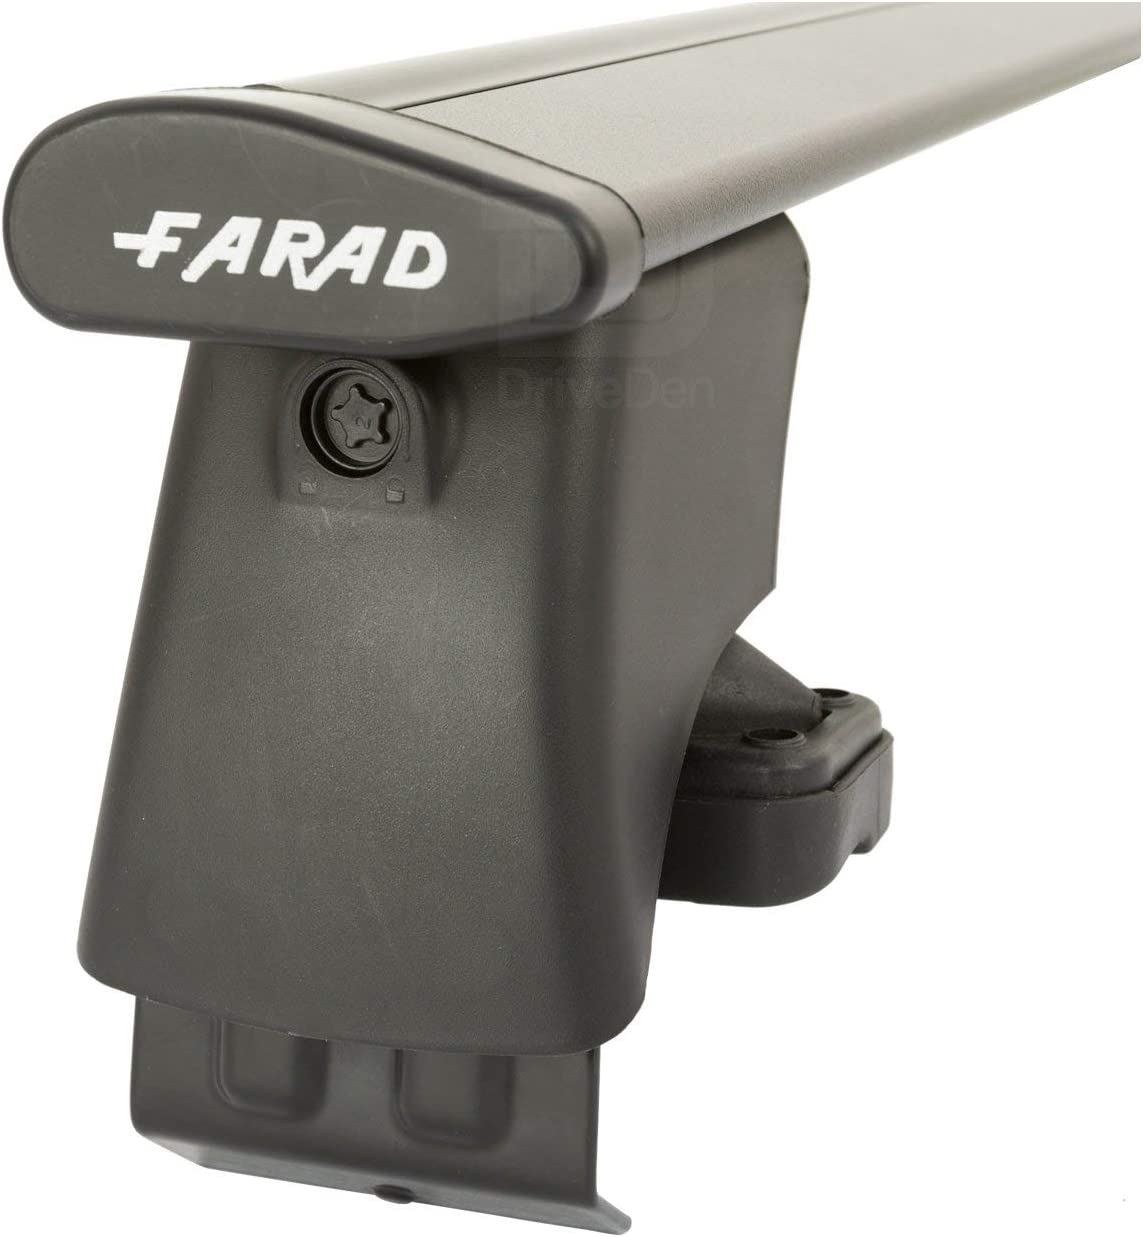 FARAD-Kit H2 per barre portatutto - Audi A8 2002-2009 (senza corrimano)